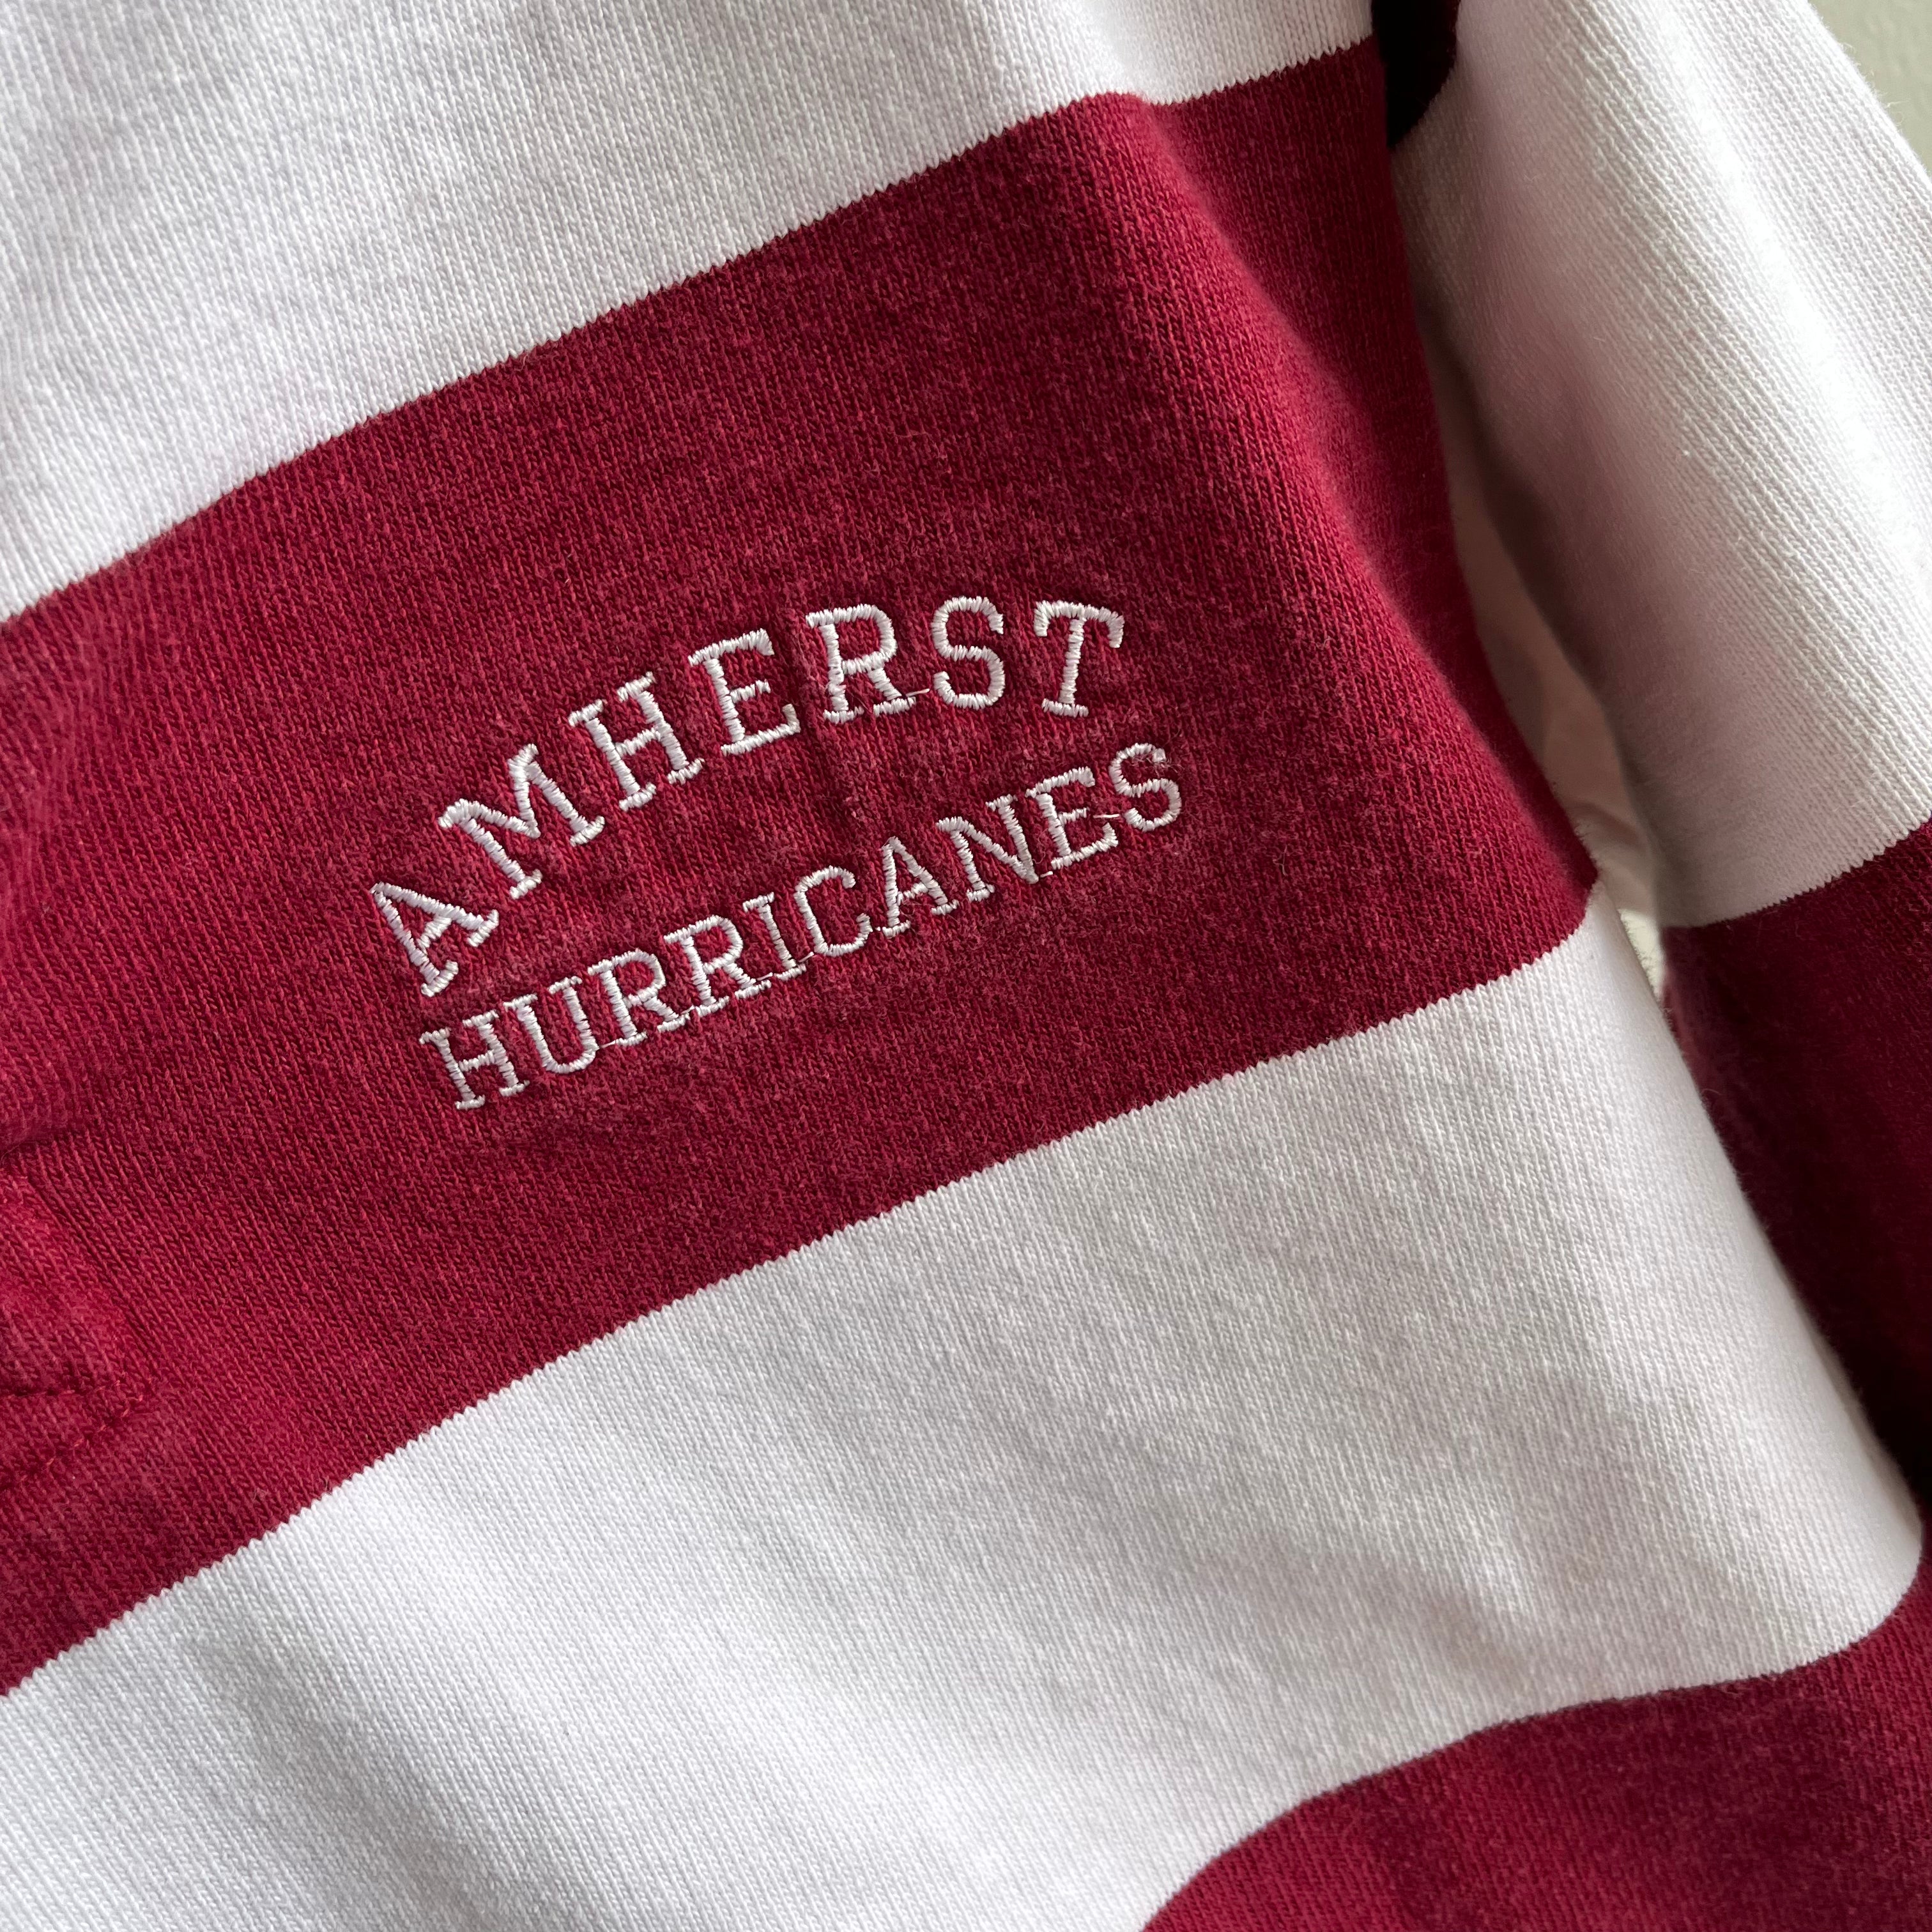 Maillot de rugby Amherst Hurricanes des années 1990